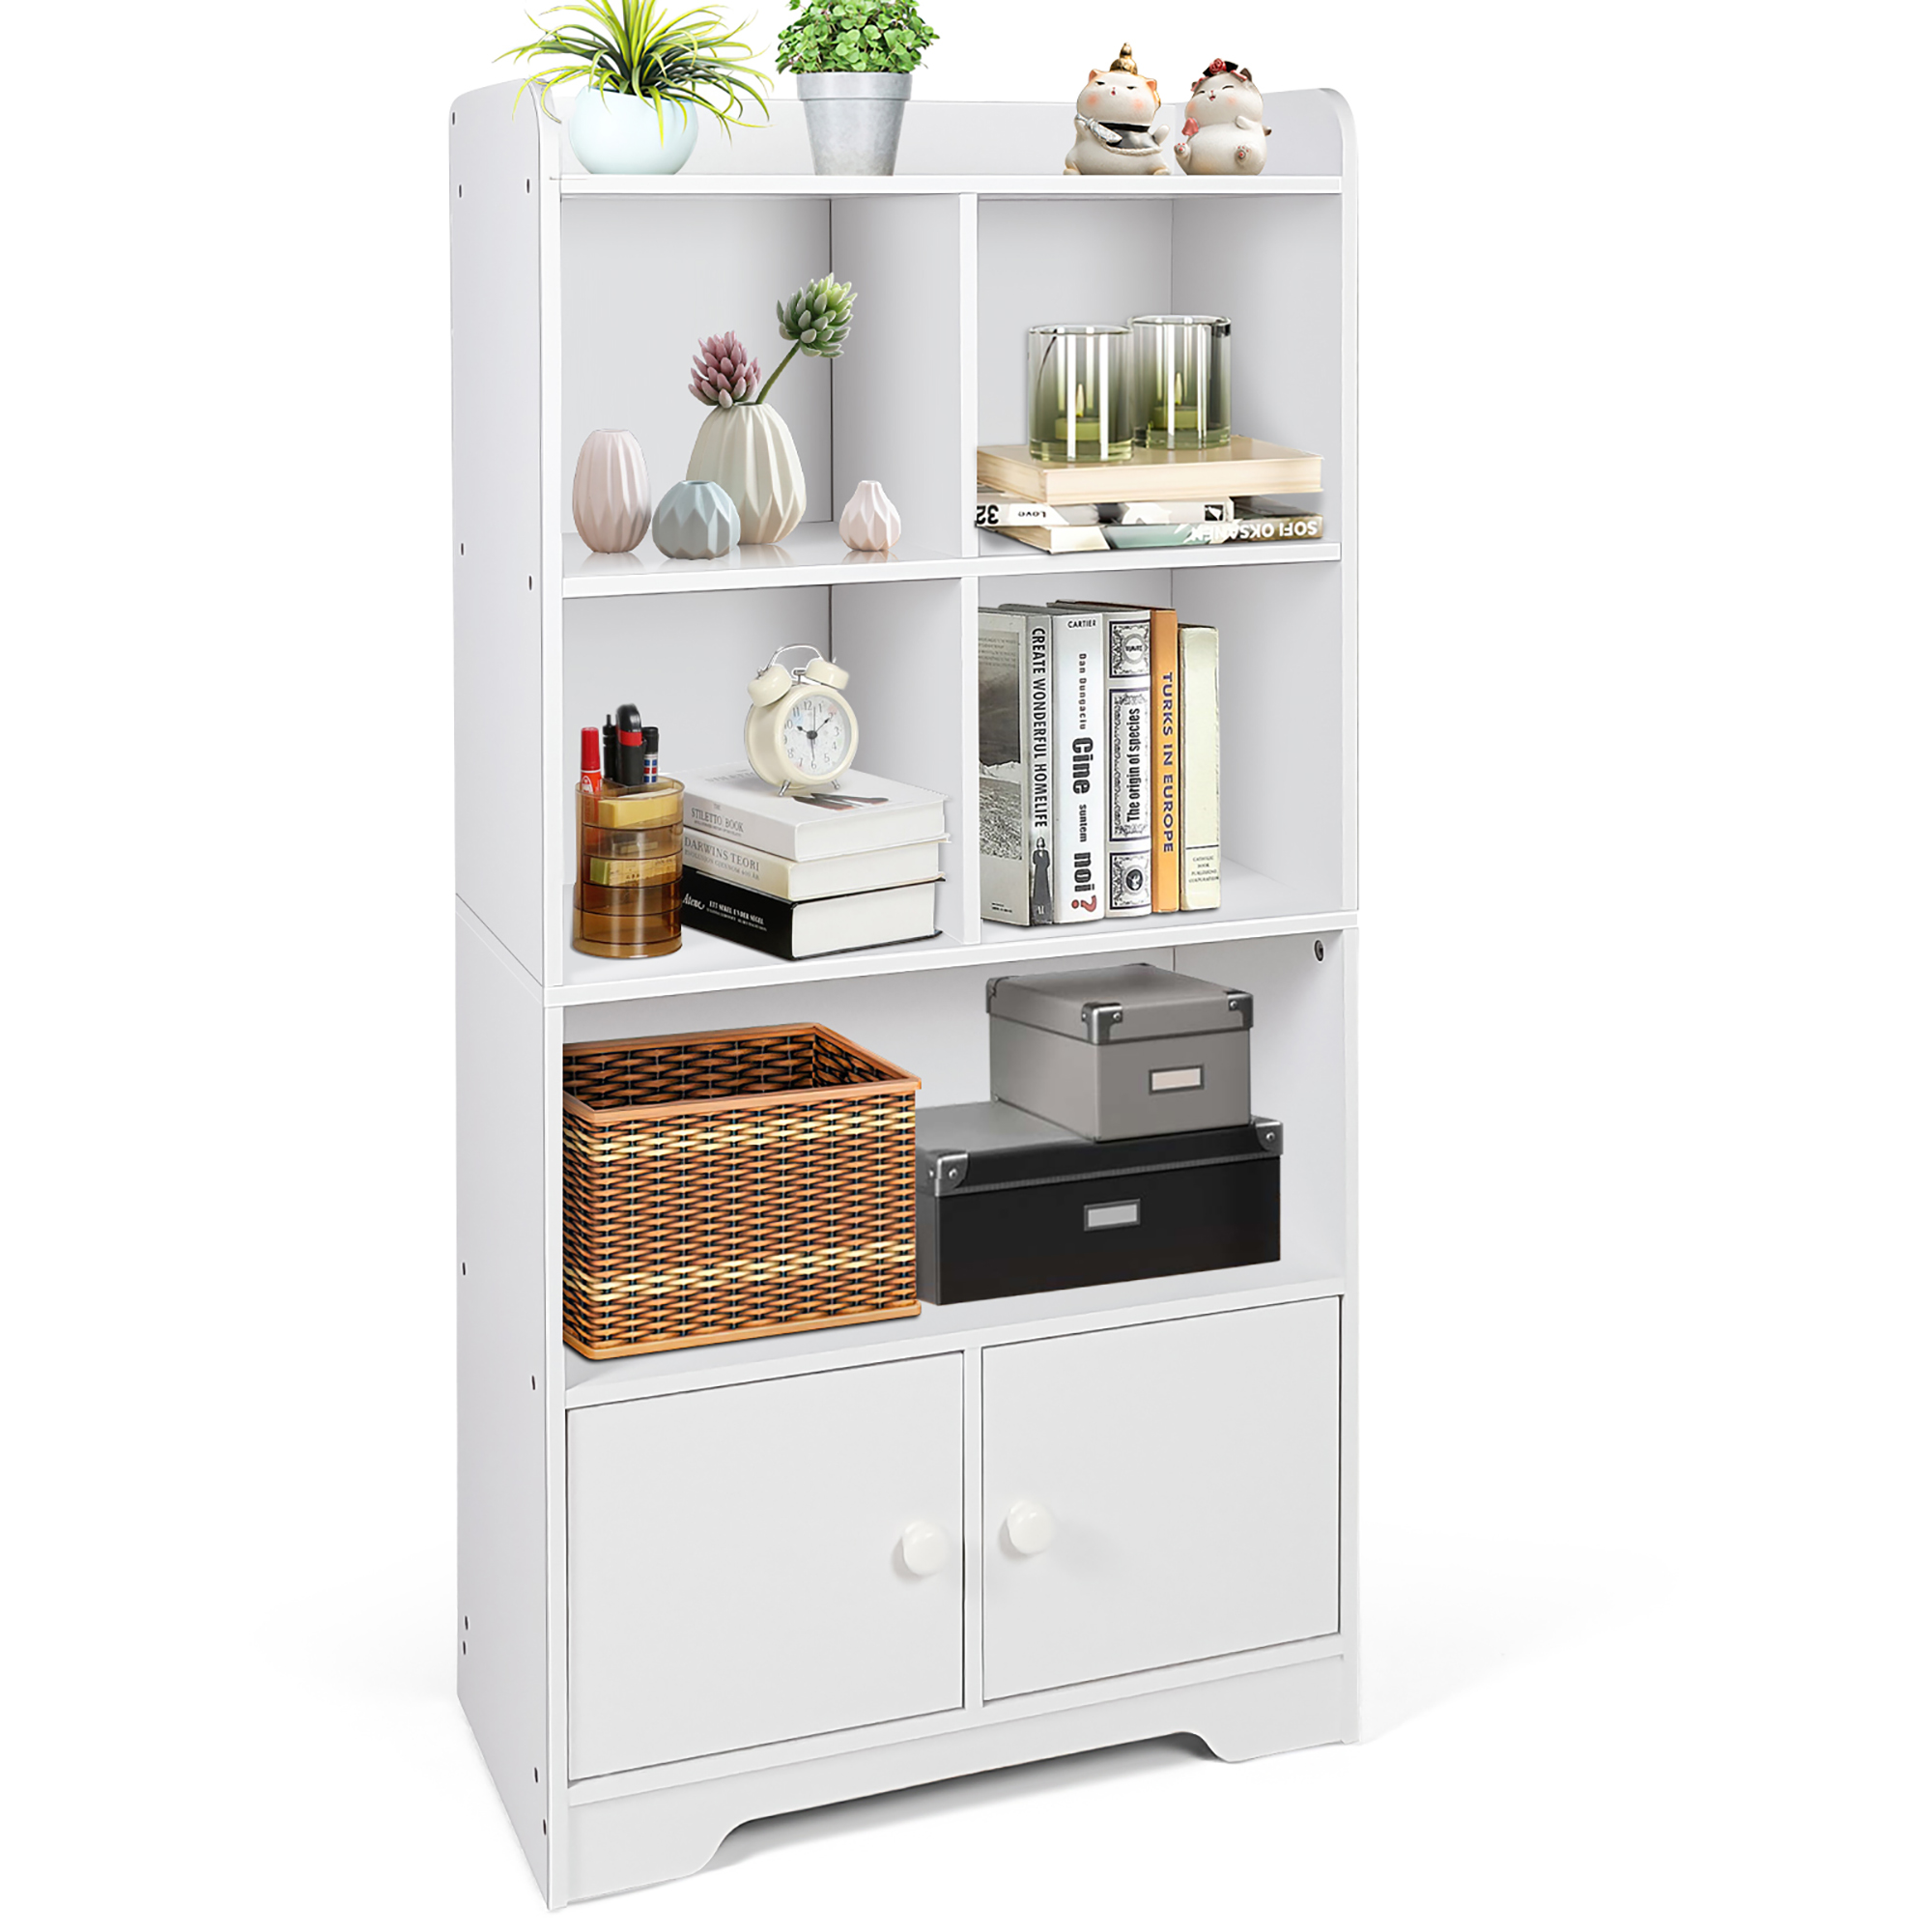 Costway 4-Tier Bookshelf 2-Door Storage Cabinet w/4 Cubes Display Shelf for Home Office - image 1 of 10